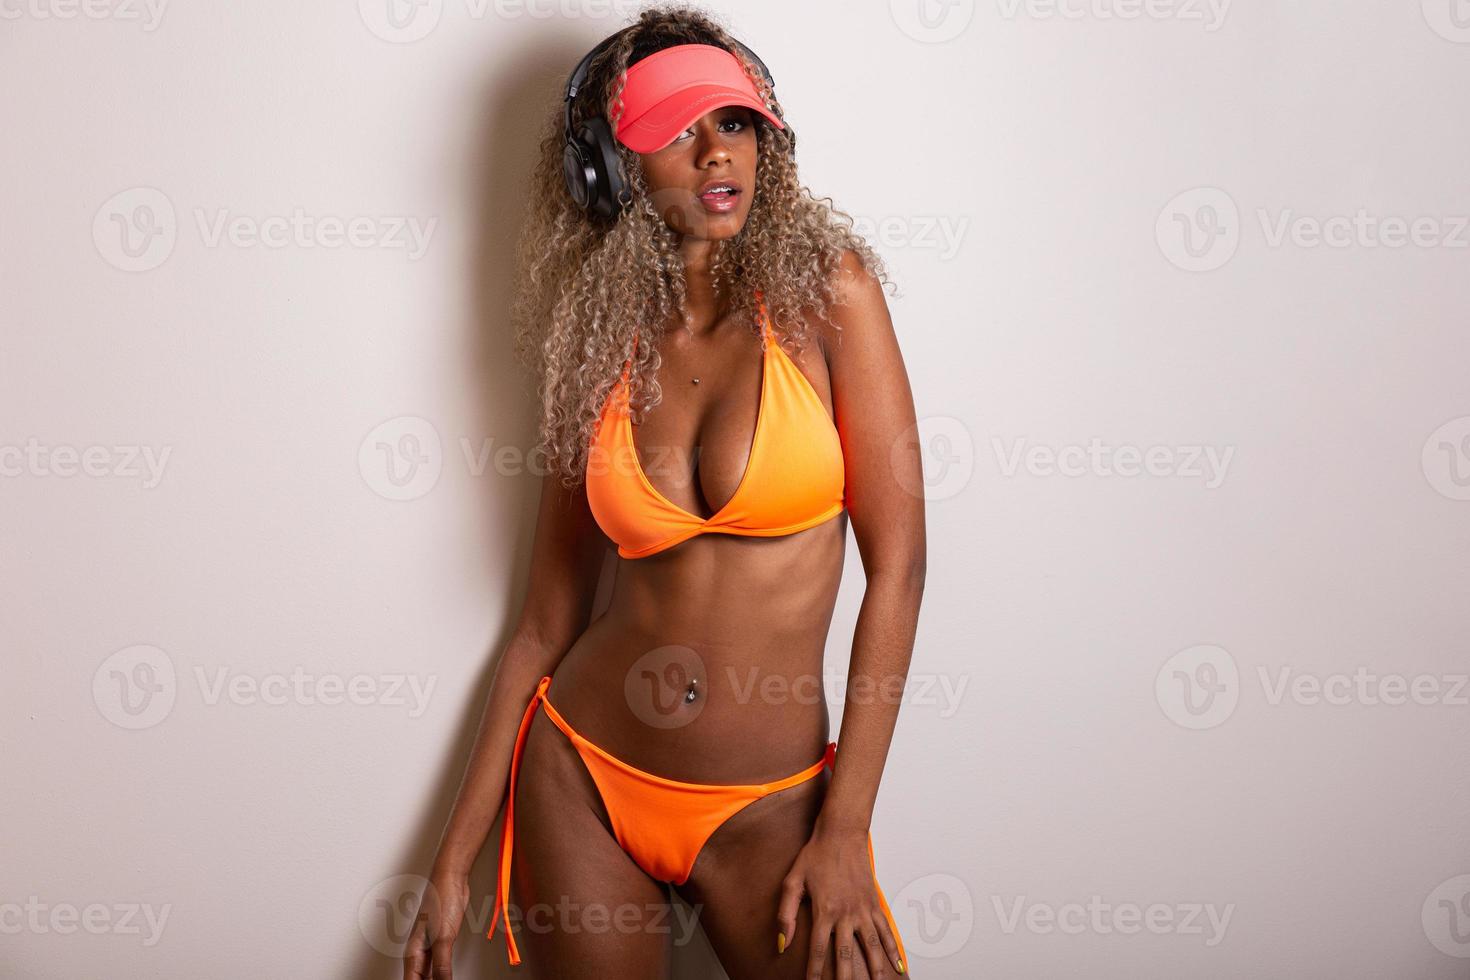 garota atraente de cabelo encaracolado em um biquíni laranja, chapéu, boca aberta emocionalmente em um fundo branco com um corpo perfeito. isolado. tiro de estúdio. foto